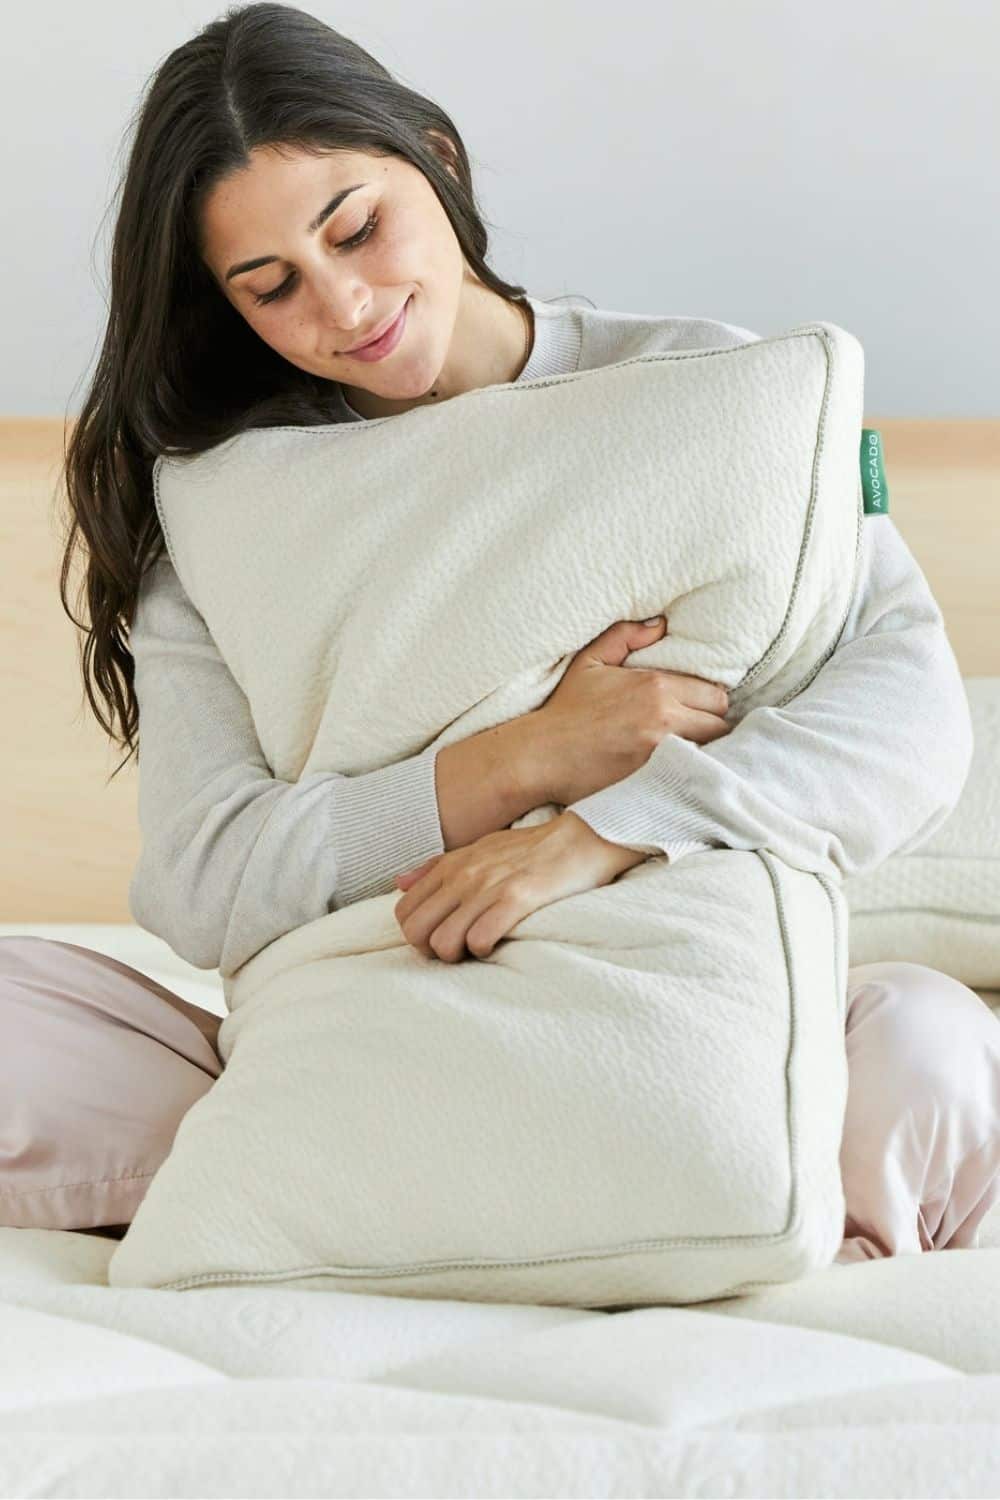 你不需要开始一场枕头大战，选择有机枕头给自己最好的可持续睡眠…#有机枕头#最好的有机枕头#自然有机枕头#有机expillows #有机羽绒枕头